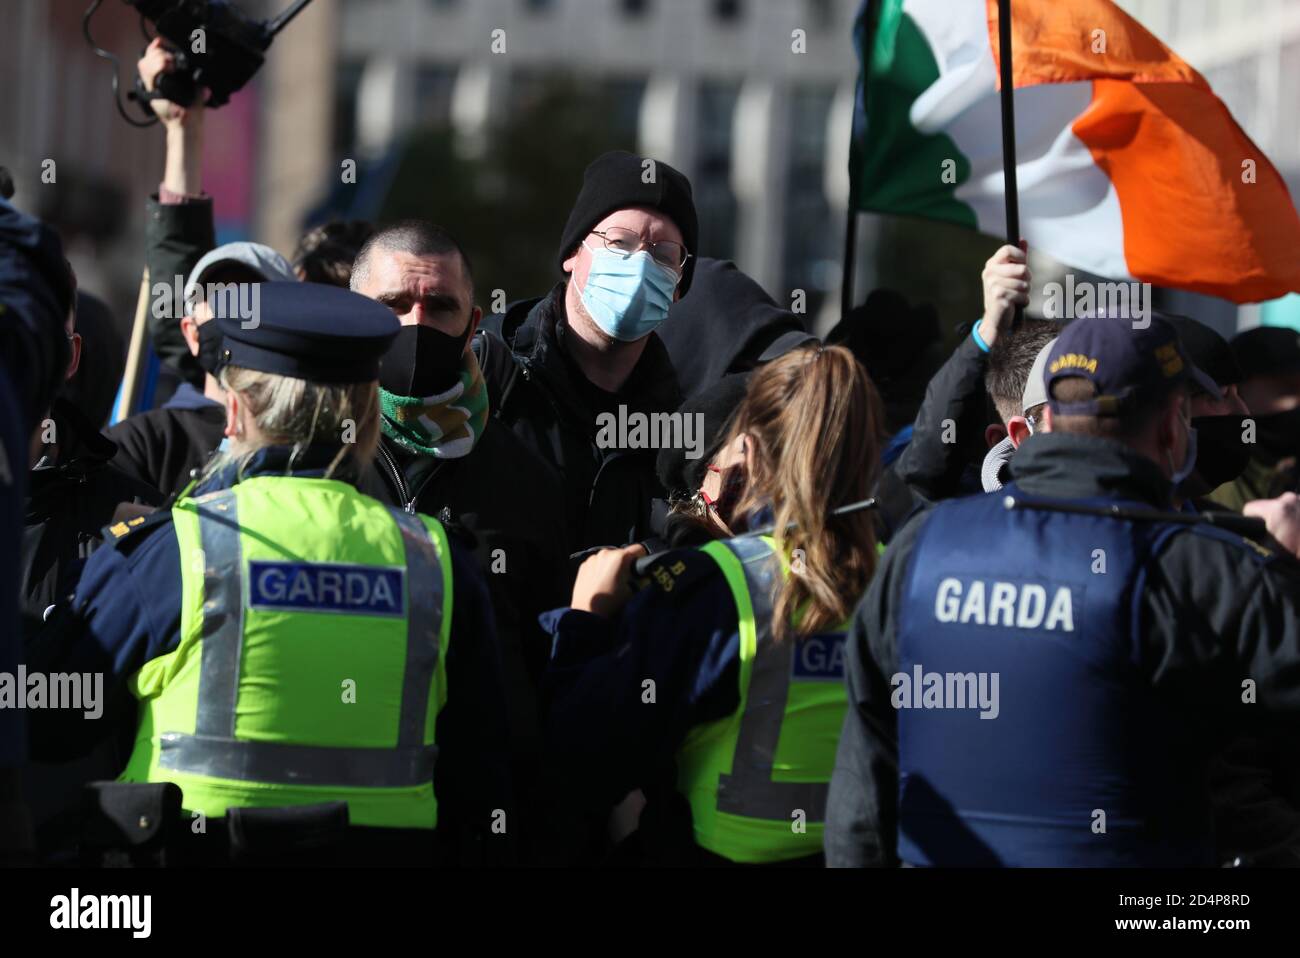 Contre-manifestants lors d'une manifestation anti-verrouillage devant Leinster House, Dublin, alors que l'Irlande continue d'être dans une écluse nationale de niveau 3 du coronavirus. Banque D'Images